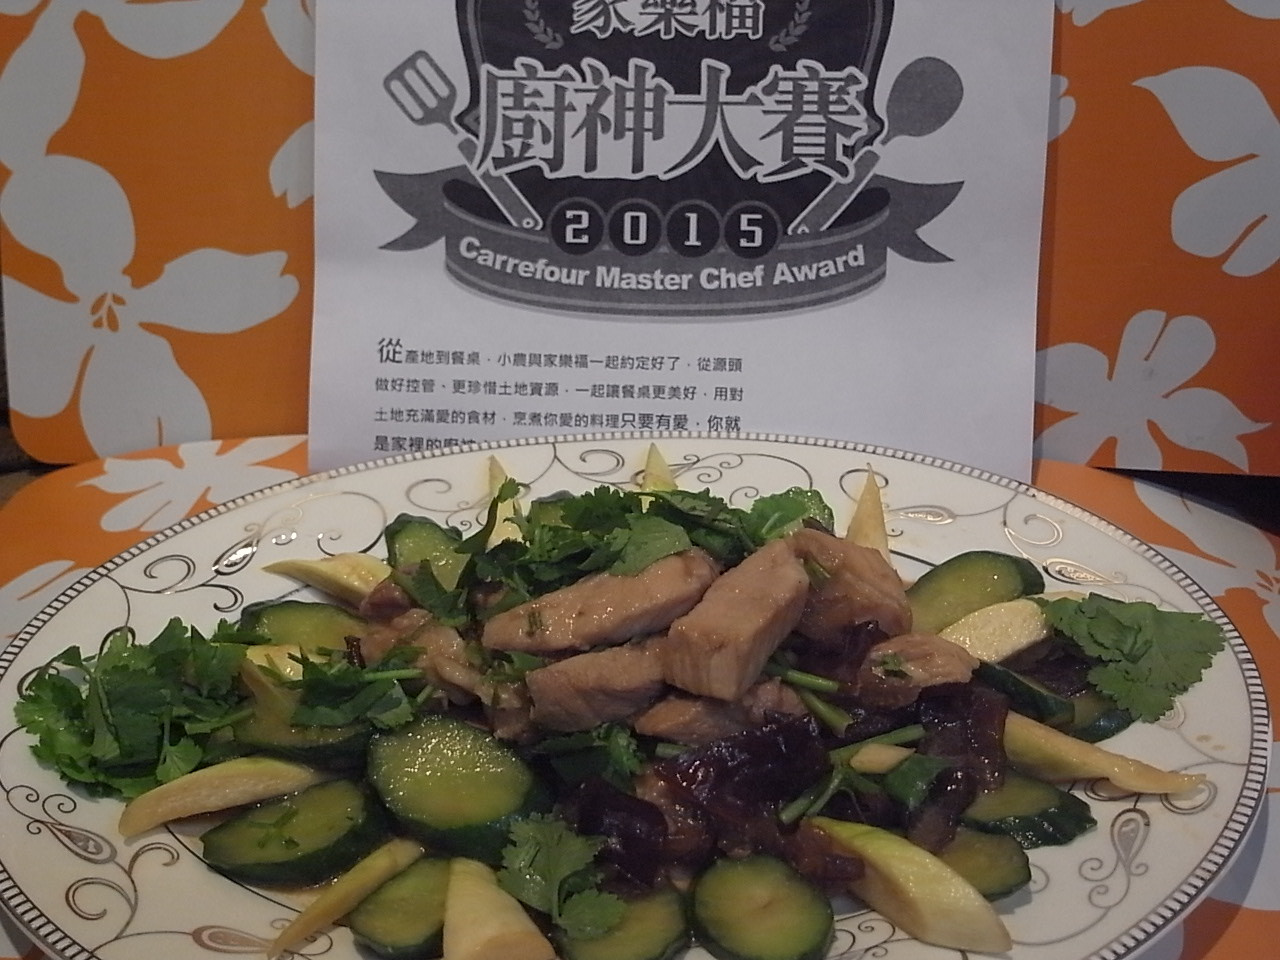 黃瓜木耳京醬豬【家樂福廚神大賽2015】